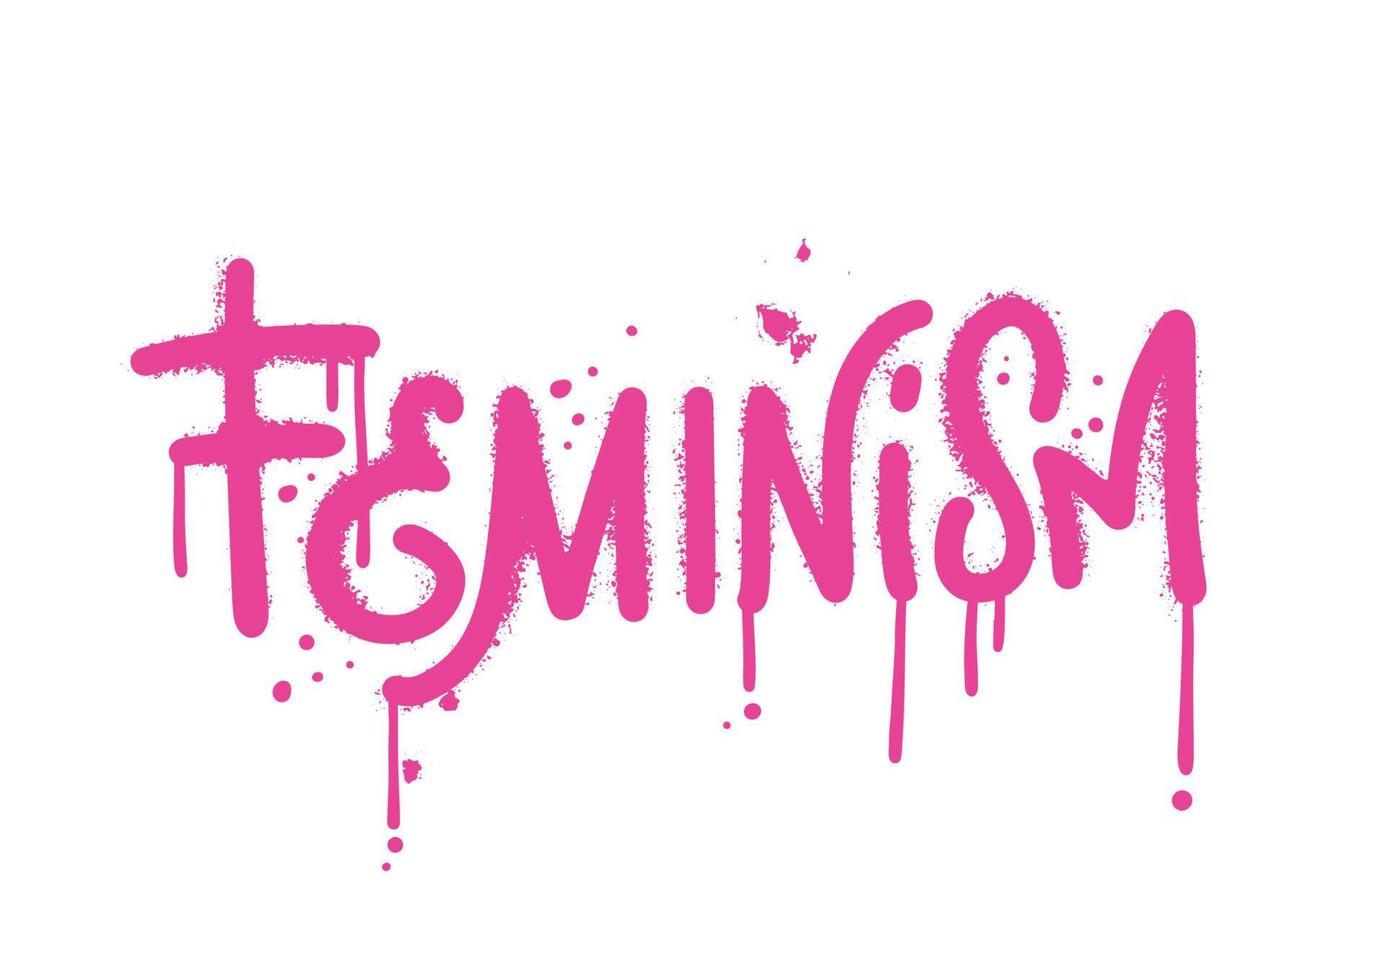 feminismo - palavra em estilo de graffiti de rua urbana com efeitos de respingo e gotas. modelo para o dia internacional da mulher. imprimir para camiseta gráfica, moletom. ilustração texturizada desenhada à mão vetorial vetor